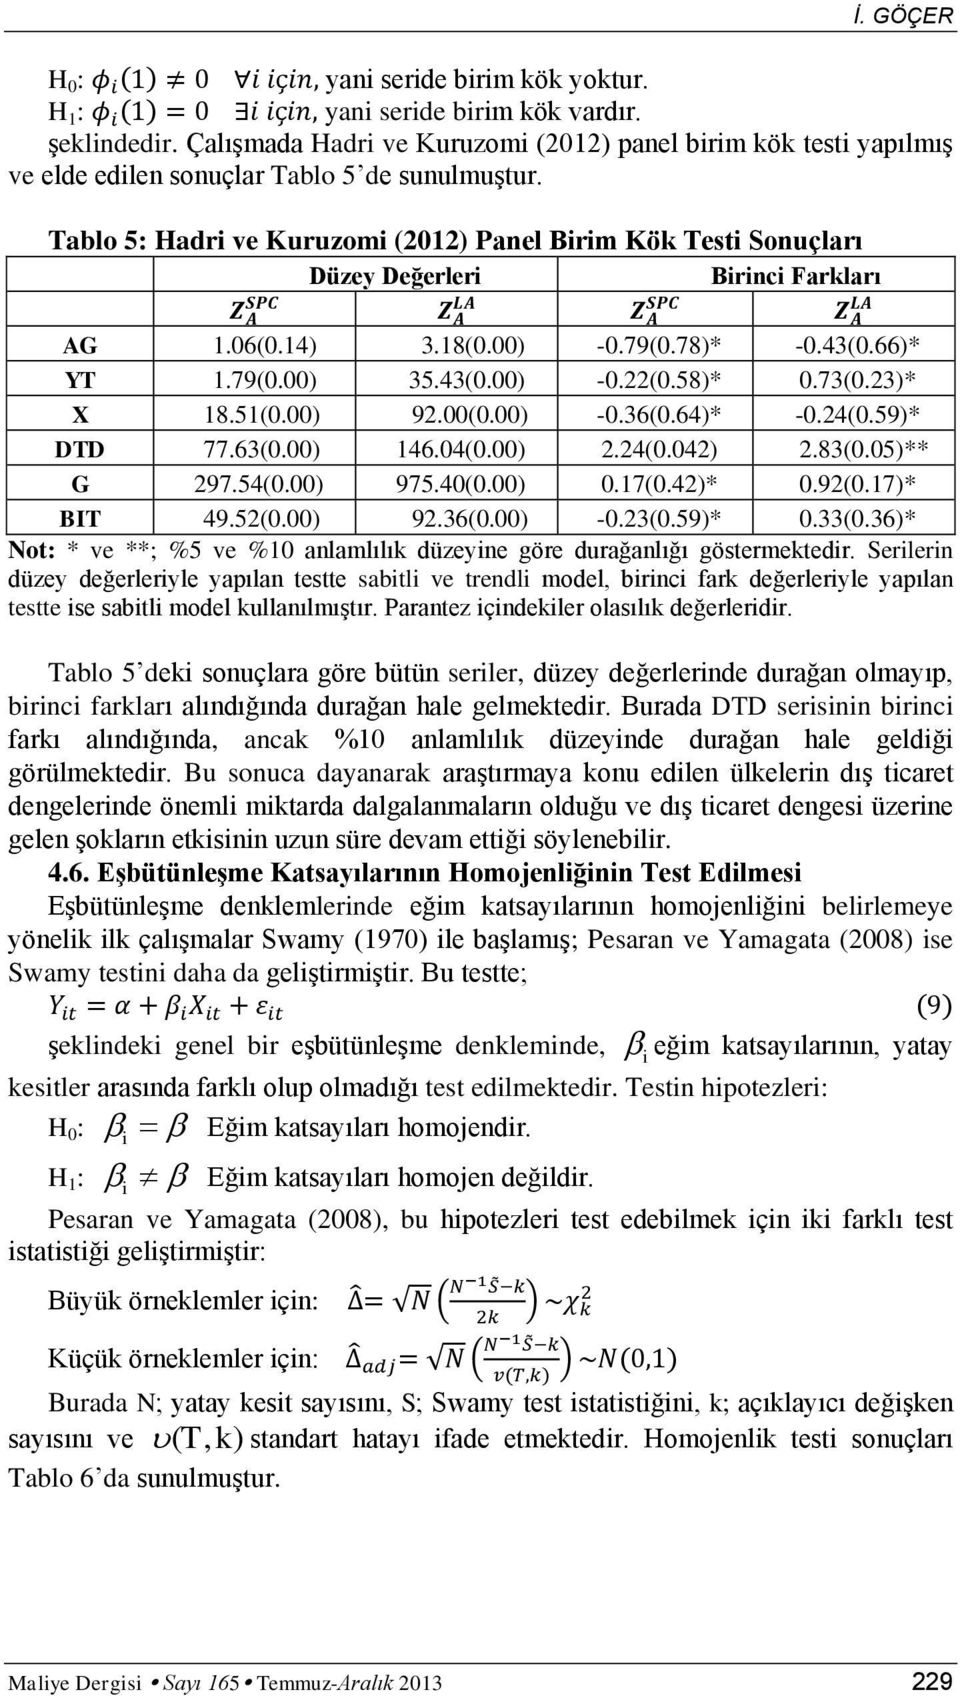 Tablo 5: Hadri ve Kuruzomi (2012) Panel Birim Kök Testi Sonuçları Düzey Değerleri Birinci Farkları AG 1.06(0.14) 3.18(0.00) -0.79(0.78)* -0.43(0.66)* YT 1.79(0.00) 35.43(0.00) -0.22(0.58)* 0.73(0.